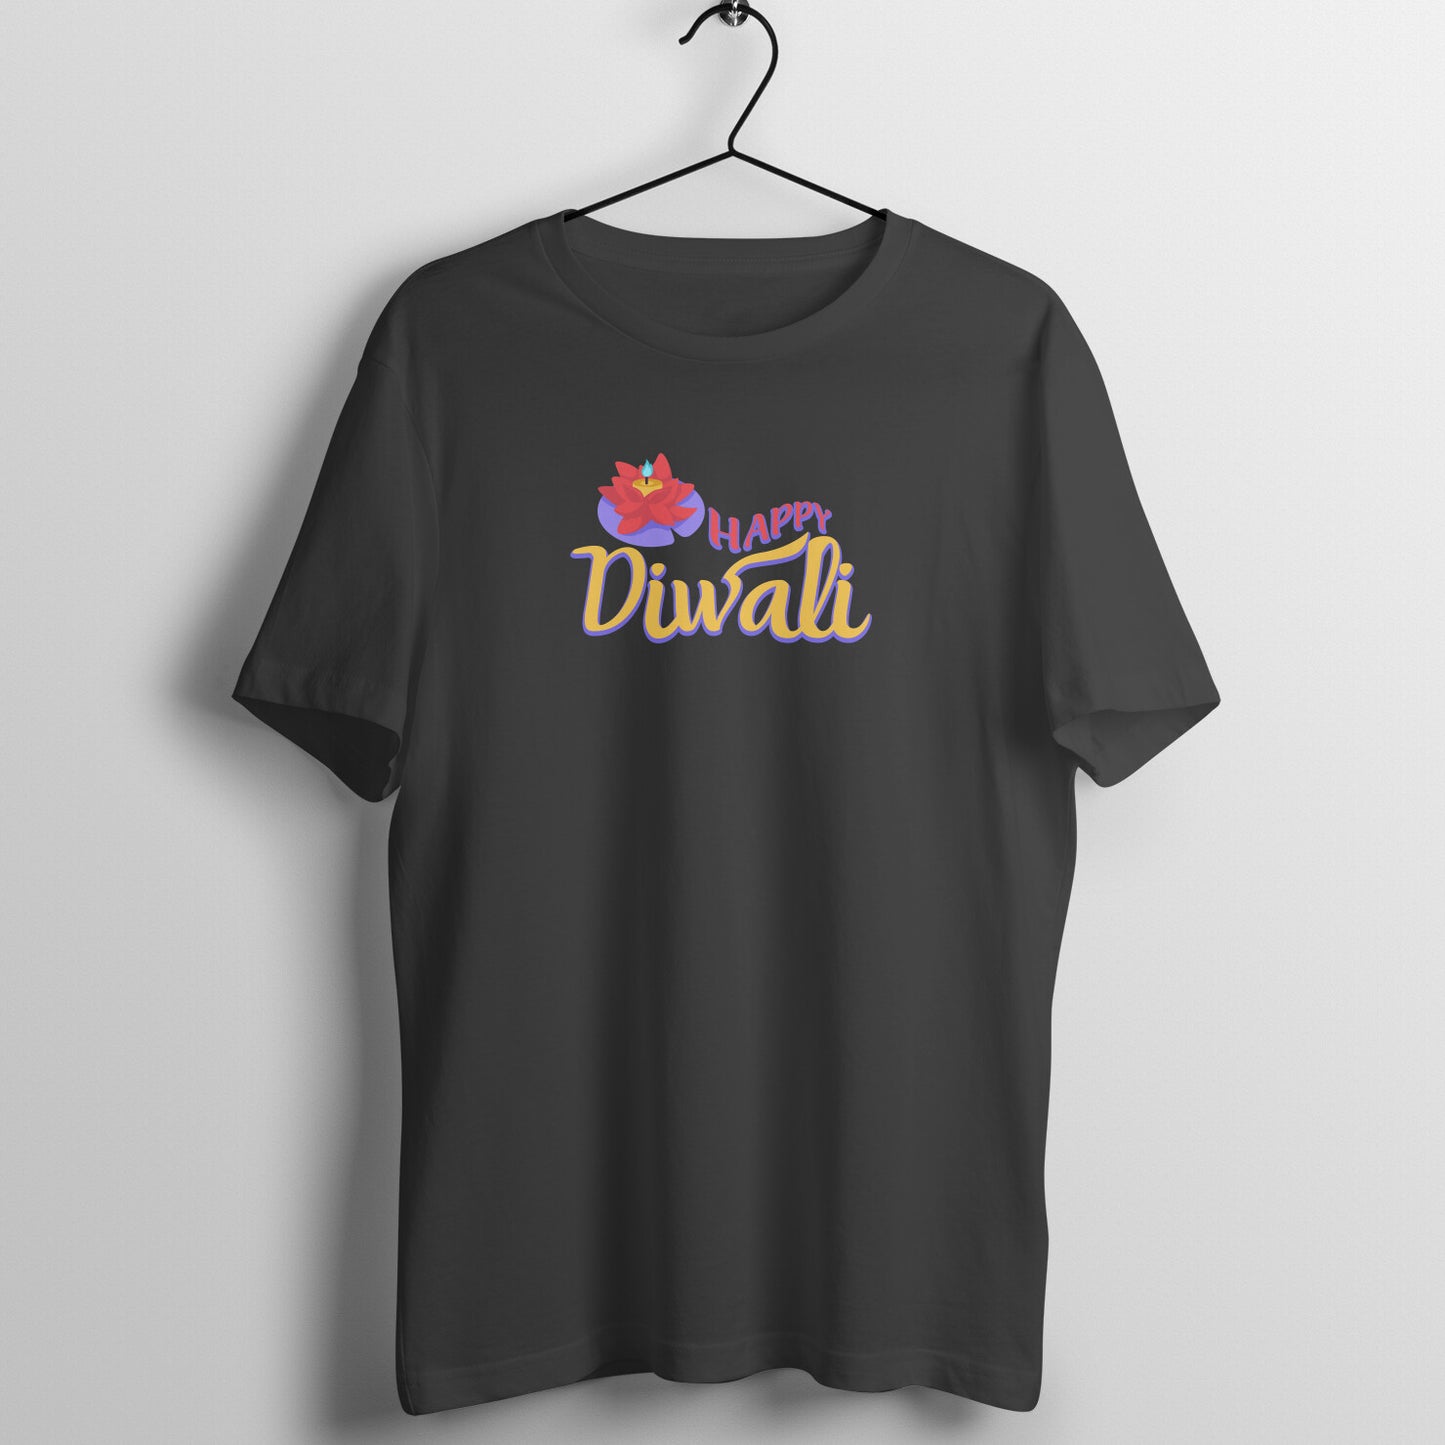 Latest Diwali Tshirt unisex design - Premium quality - Combed cotton